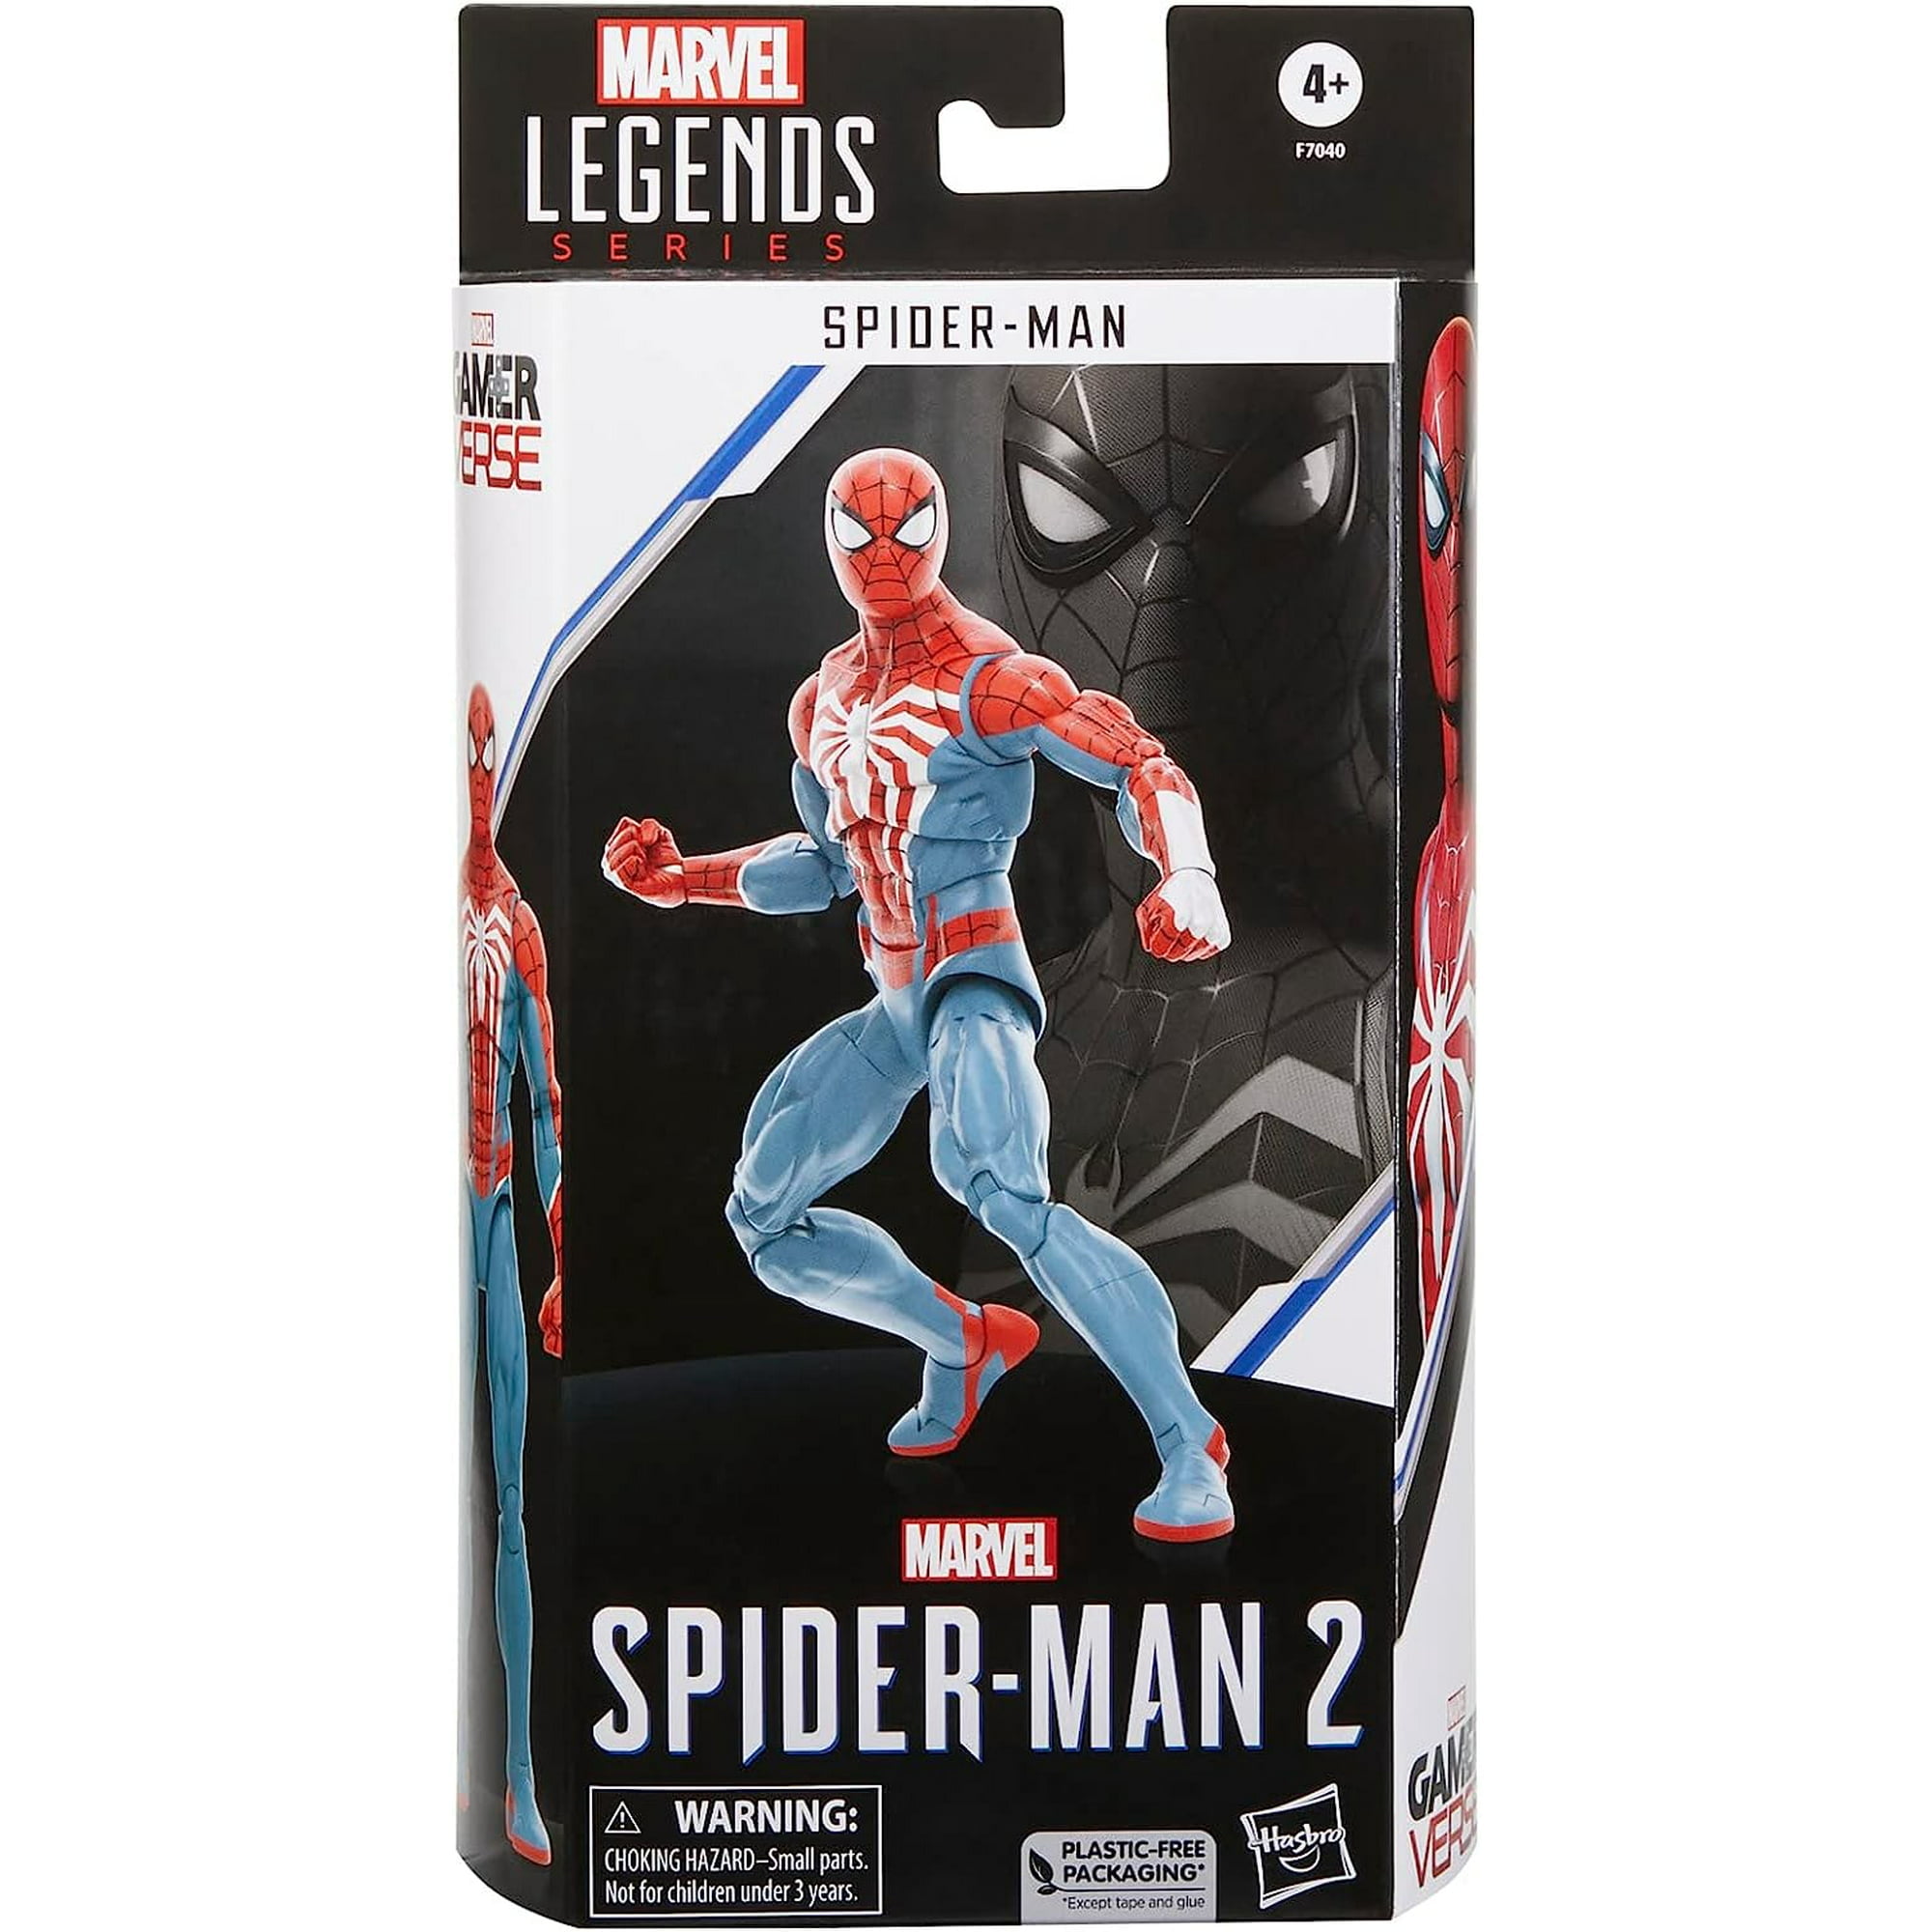 Figurine - Spider-man - Gamerverse